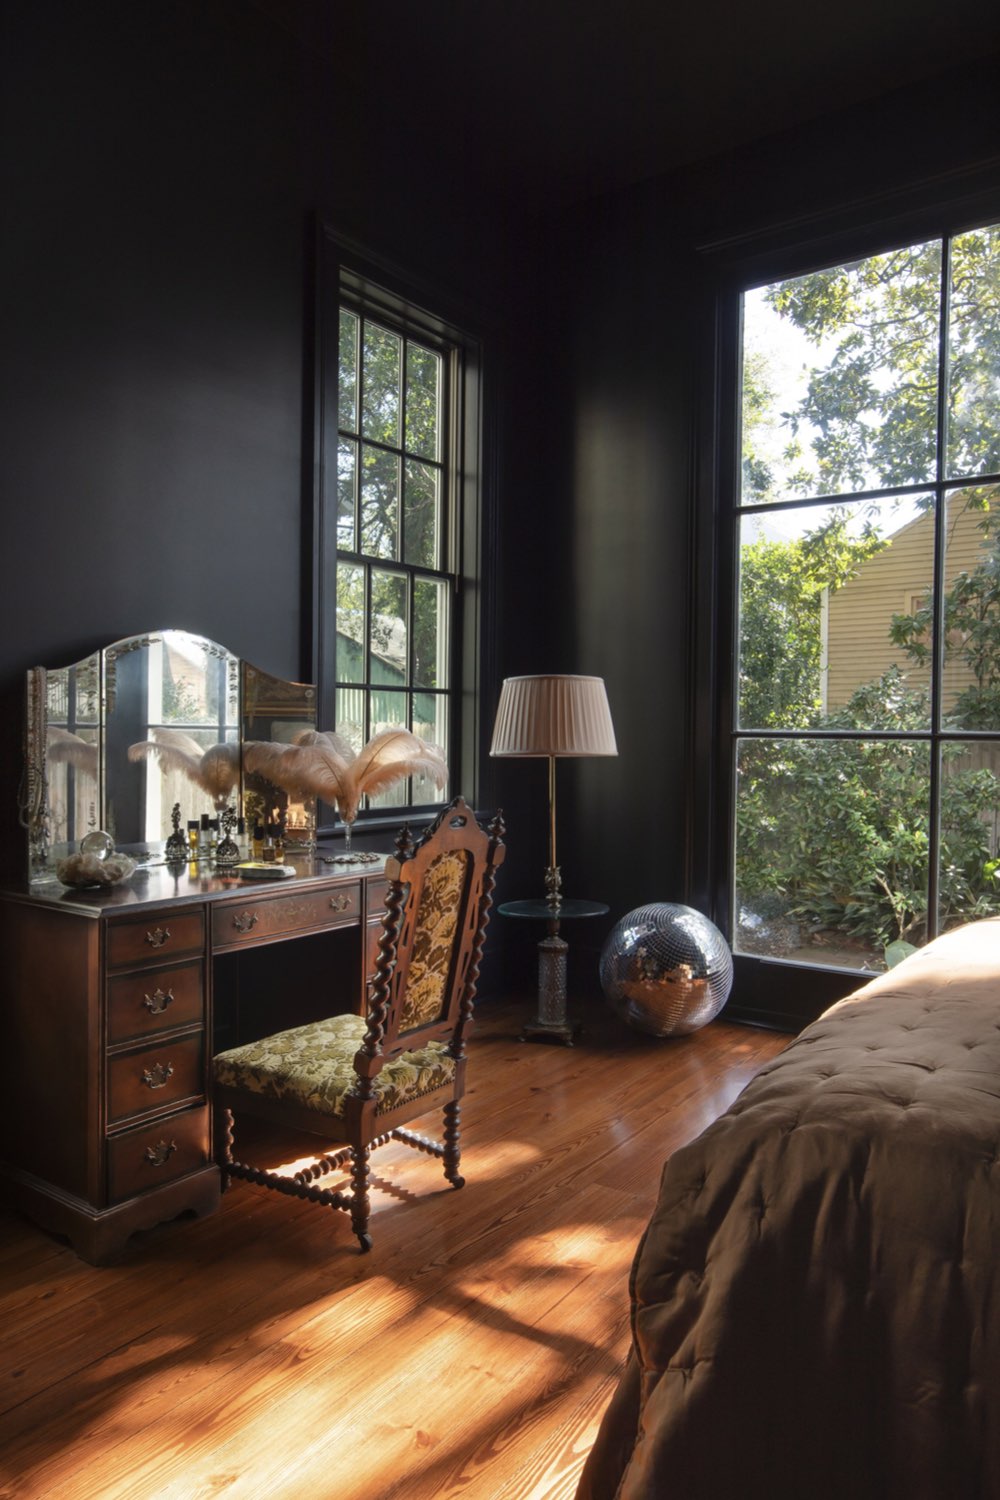 maison victorienne couleur architecture interieure chambre adulte peinture noir choix osé grandes fenêtres espace lumineux meuble coiffeuse ancienne